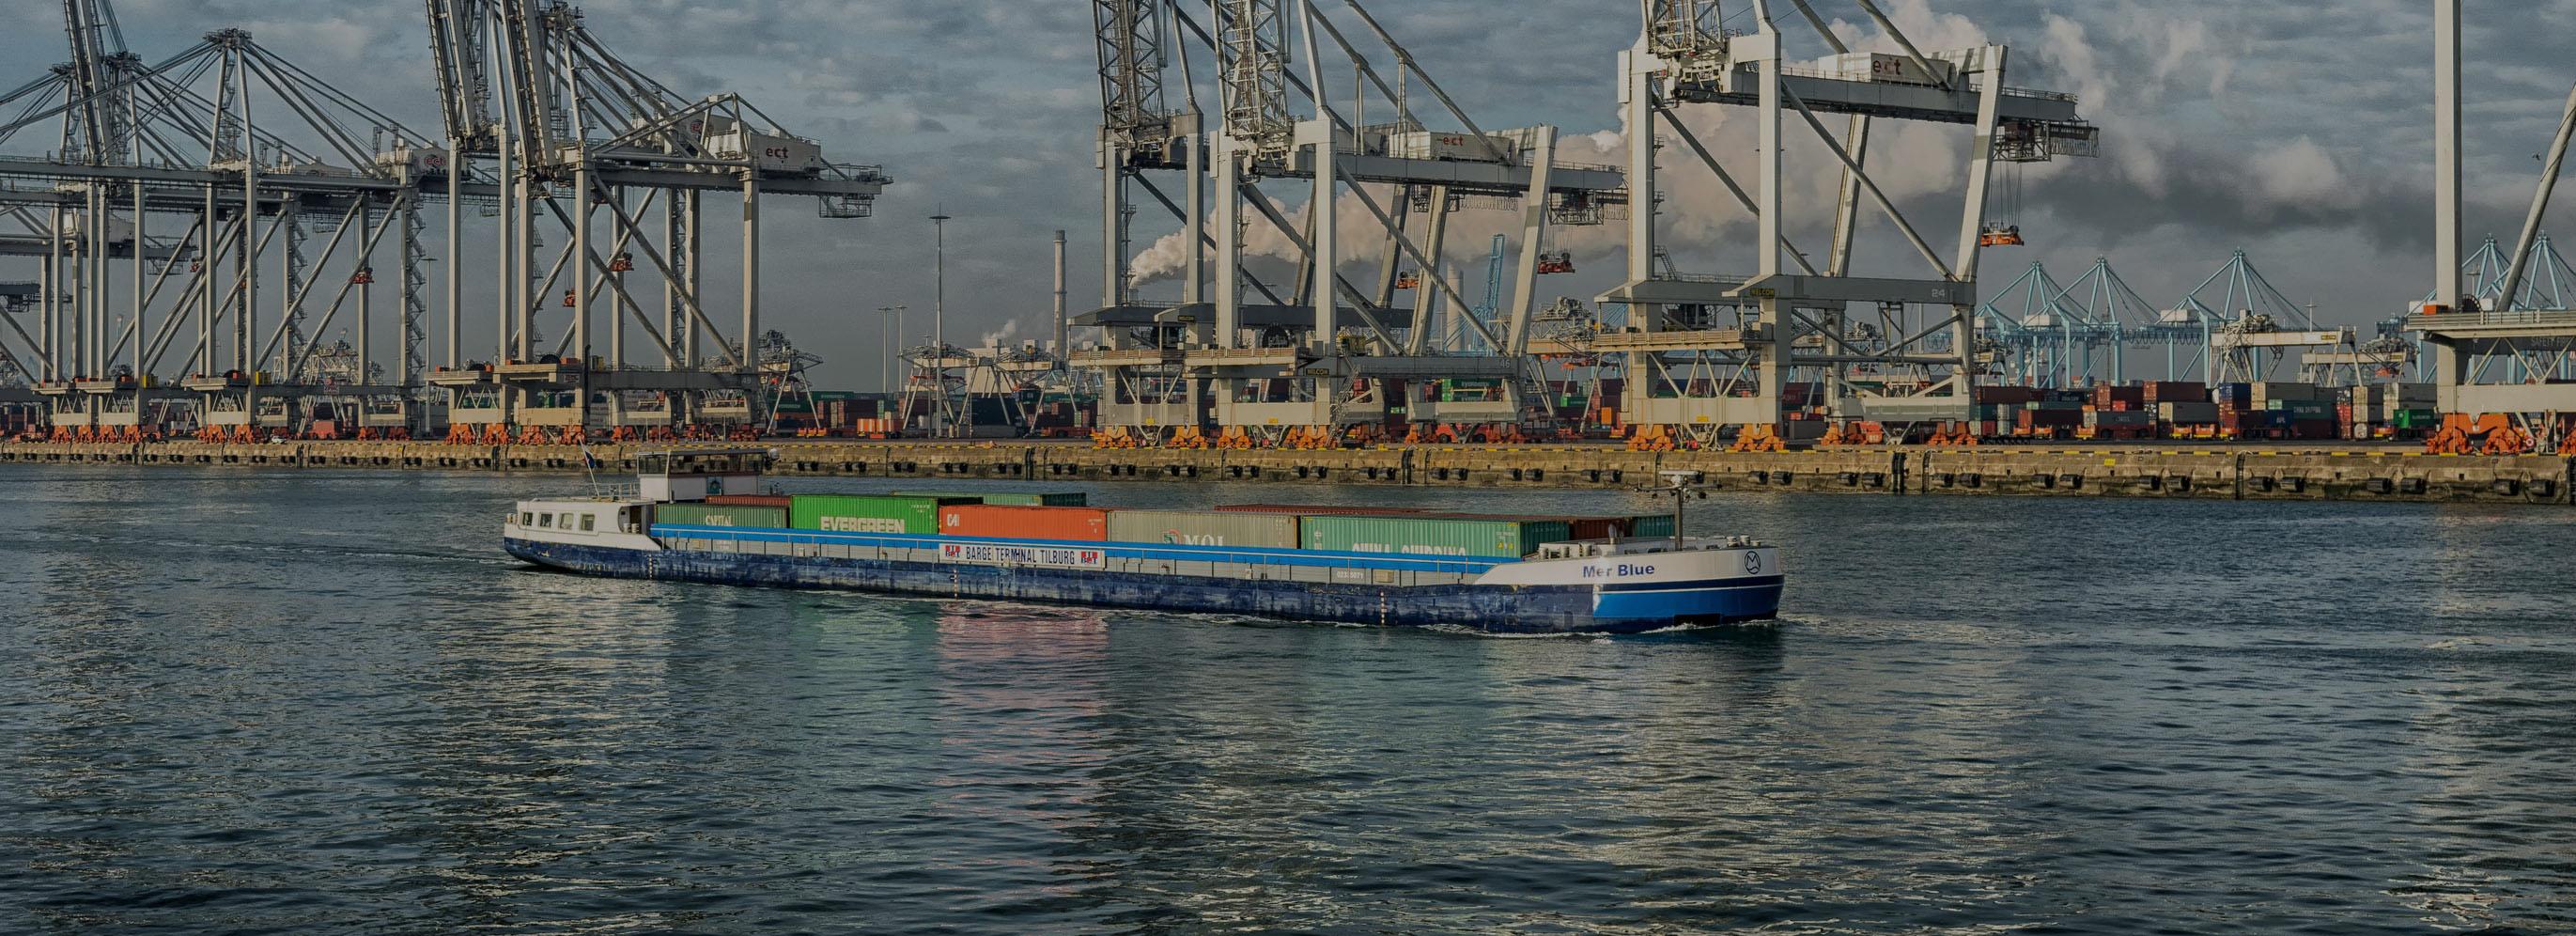 Docks et porte-conteneurs sur le port maritime de Rotterdam